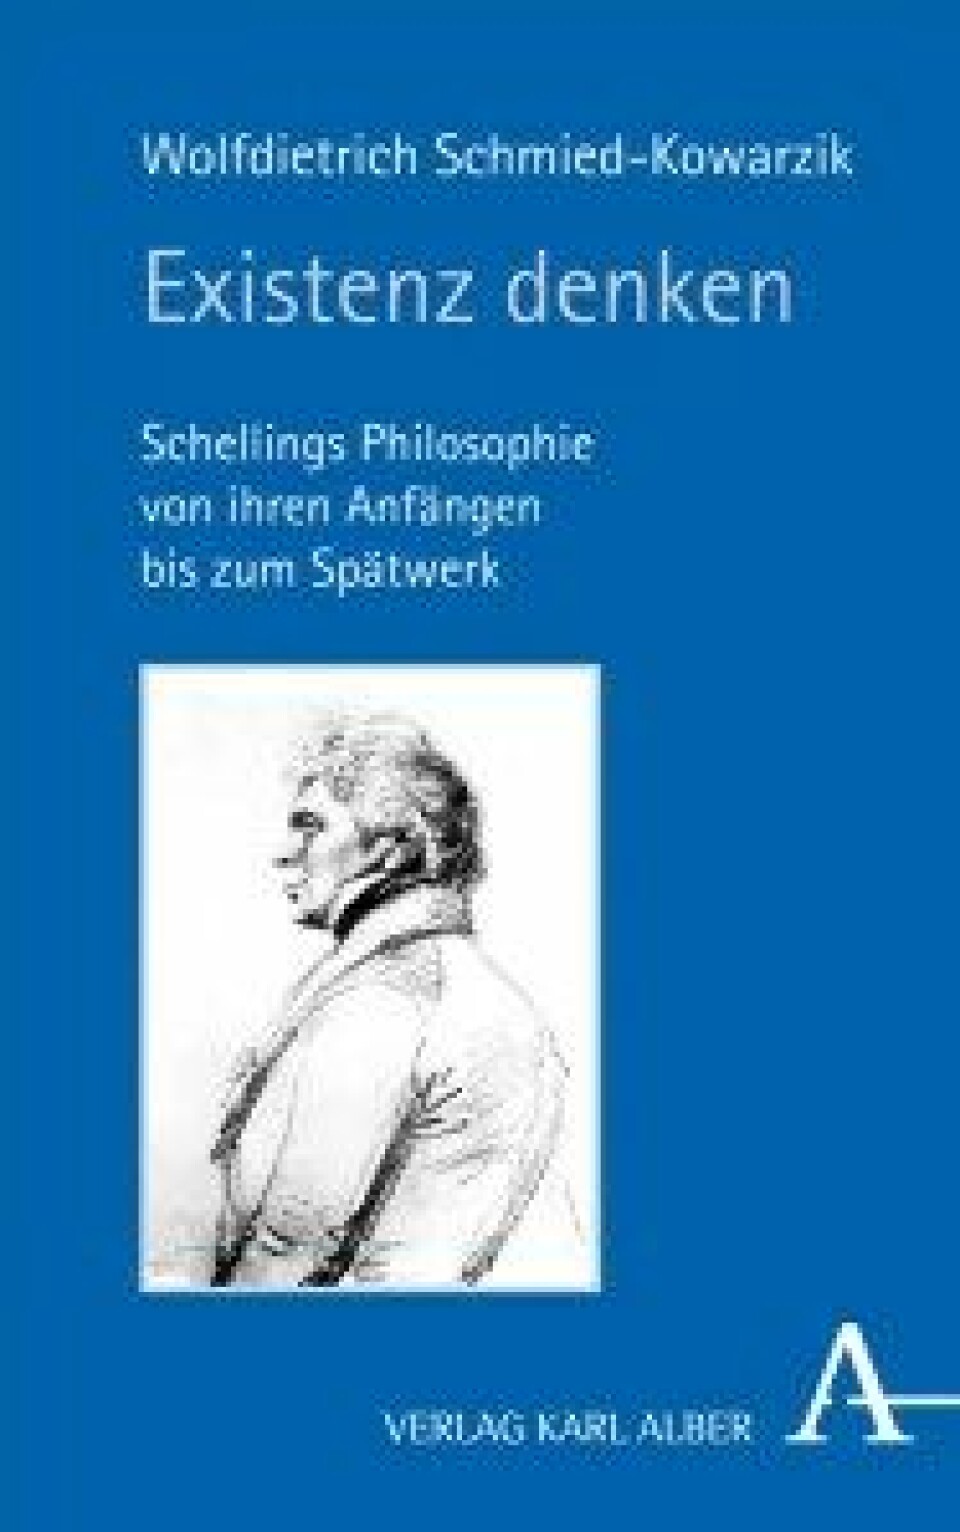 Existenz denken – Schellings Philosophie von ihren Anfängen bis zum Spätwerk av Wolfdietrich Schmied-Kowarzik, Karl Alber Verlag, 2016.